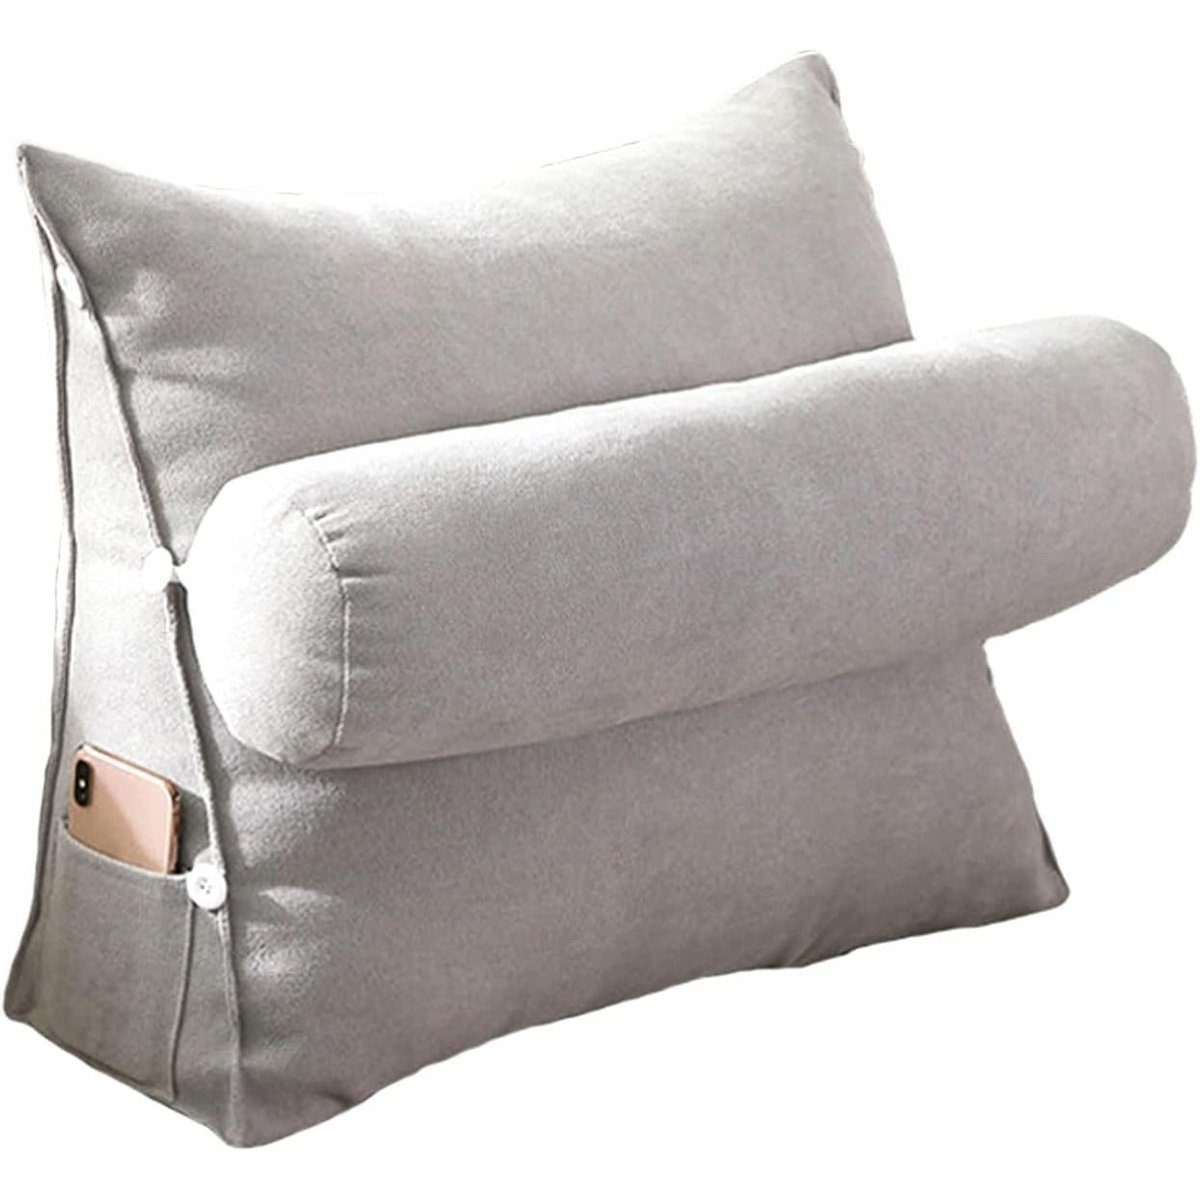 götäzer Rückenkissen Dreieckiges Kissen als Nachttischkissen, Mit Seitentaschen, Bett-Nackenkissen und Rückenlehne (45 cm) Grau